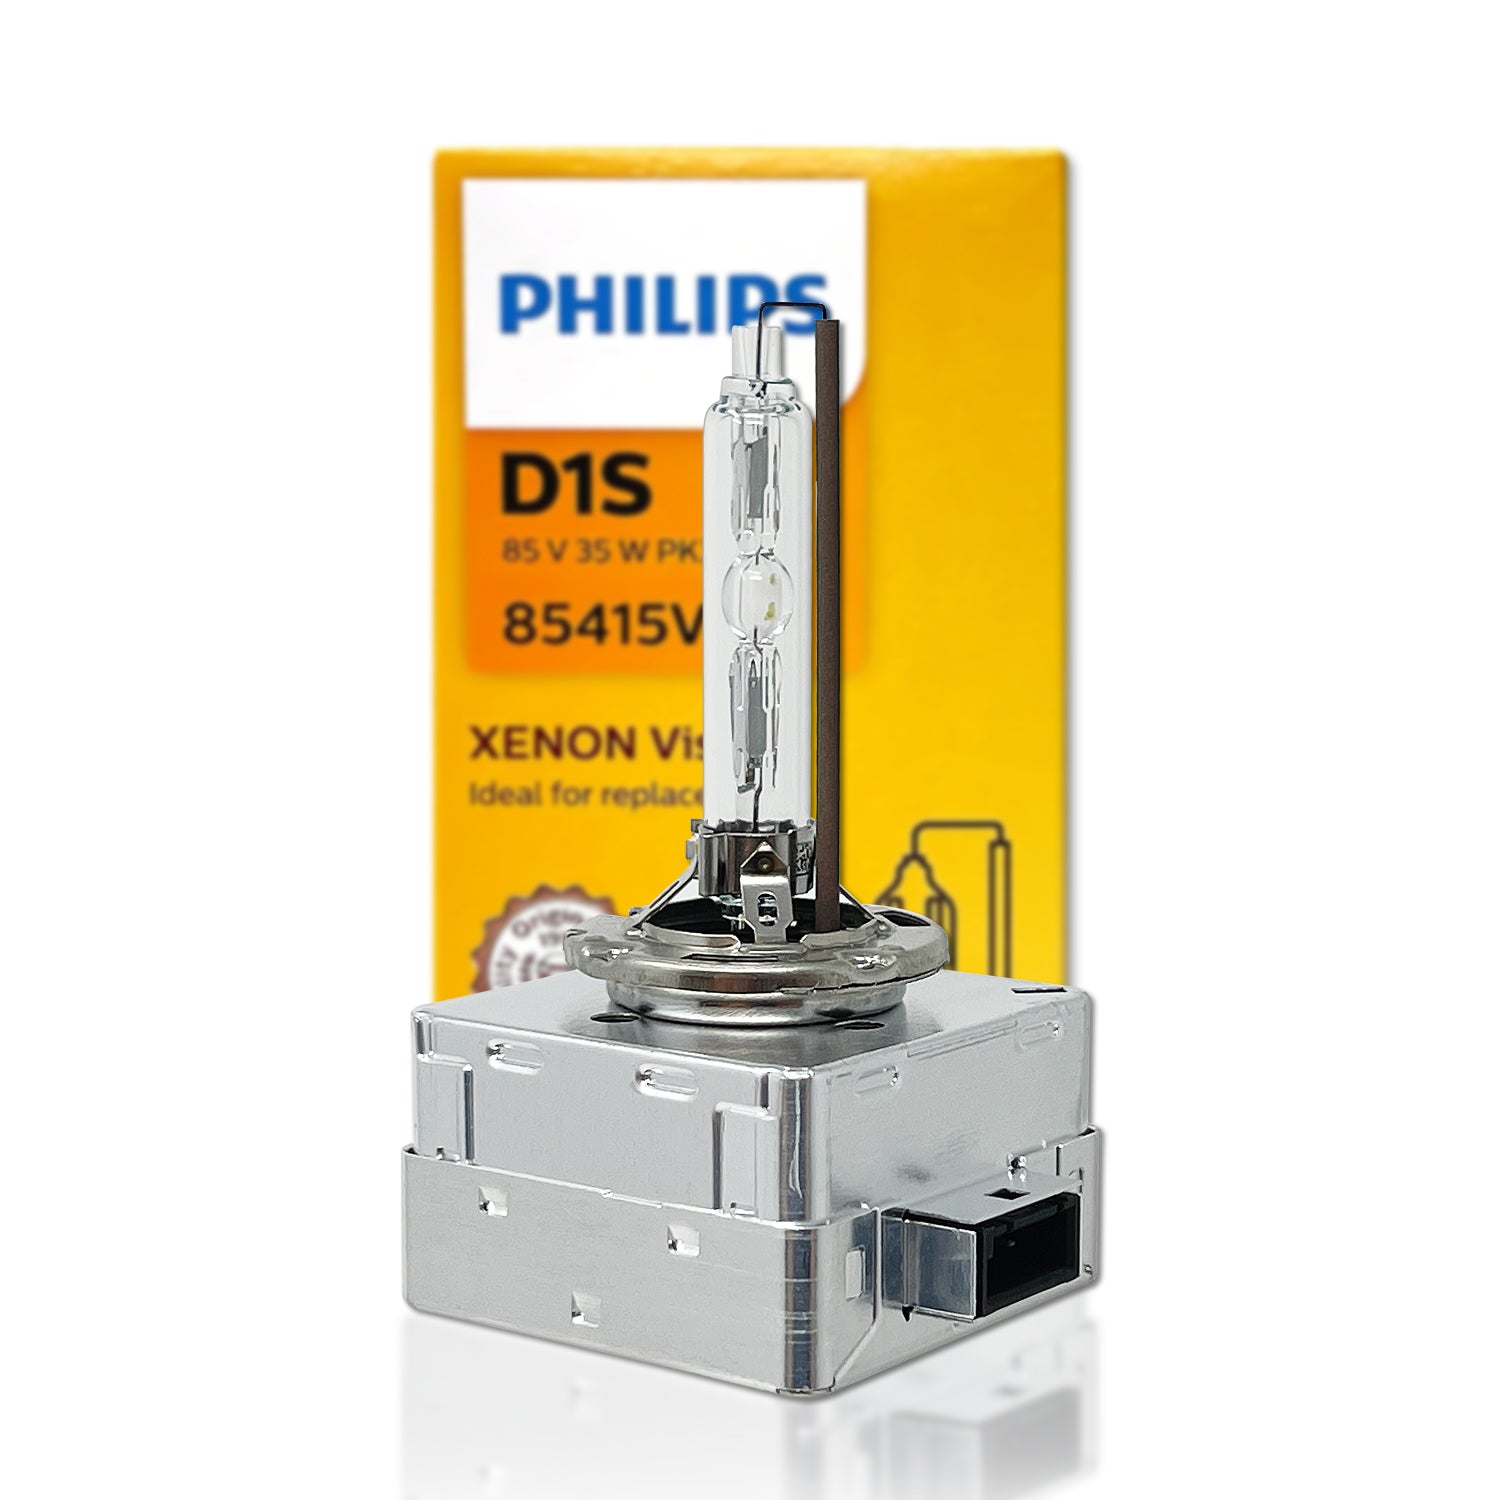 D1S Xenon-Brenner 35W PK32d-2 WhiteVision 5000K 1st. Philips, CHF 71